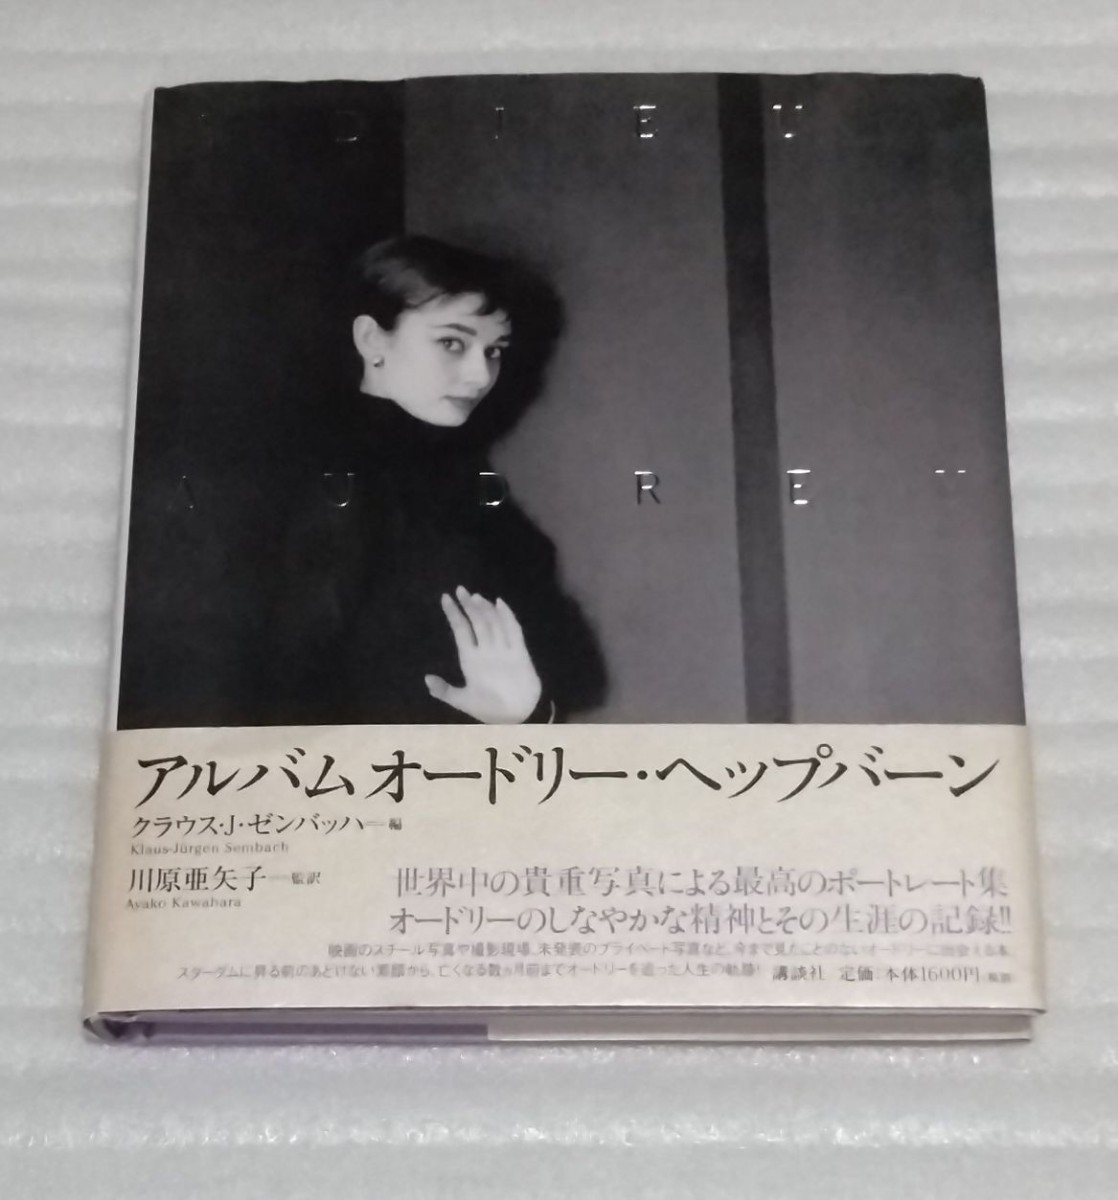 アルバム オードリー ヘップバーン 映画撮影 世界中の貴重写真 最高のポートレート集 生涯の記録 監訳モデル女優 川原亜矢子 9784062119146_ハードカバーです。